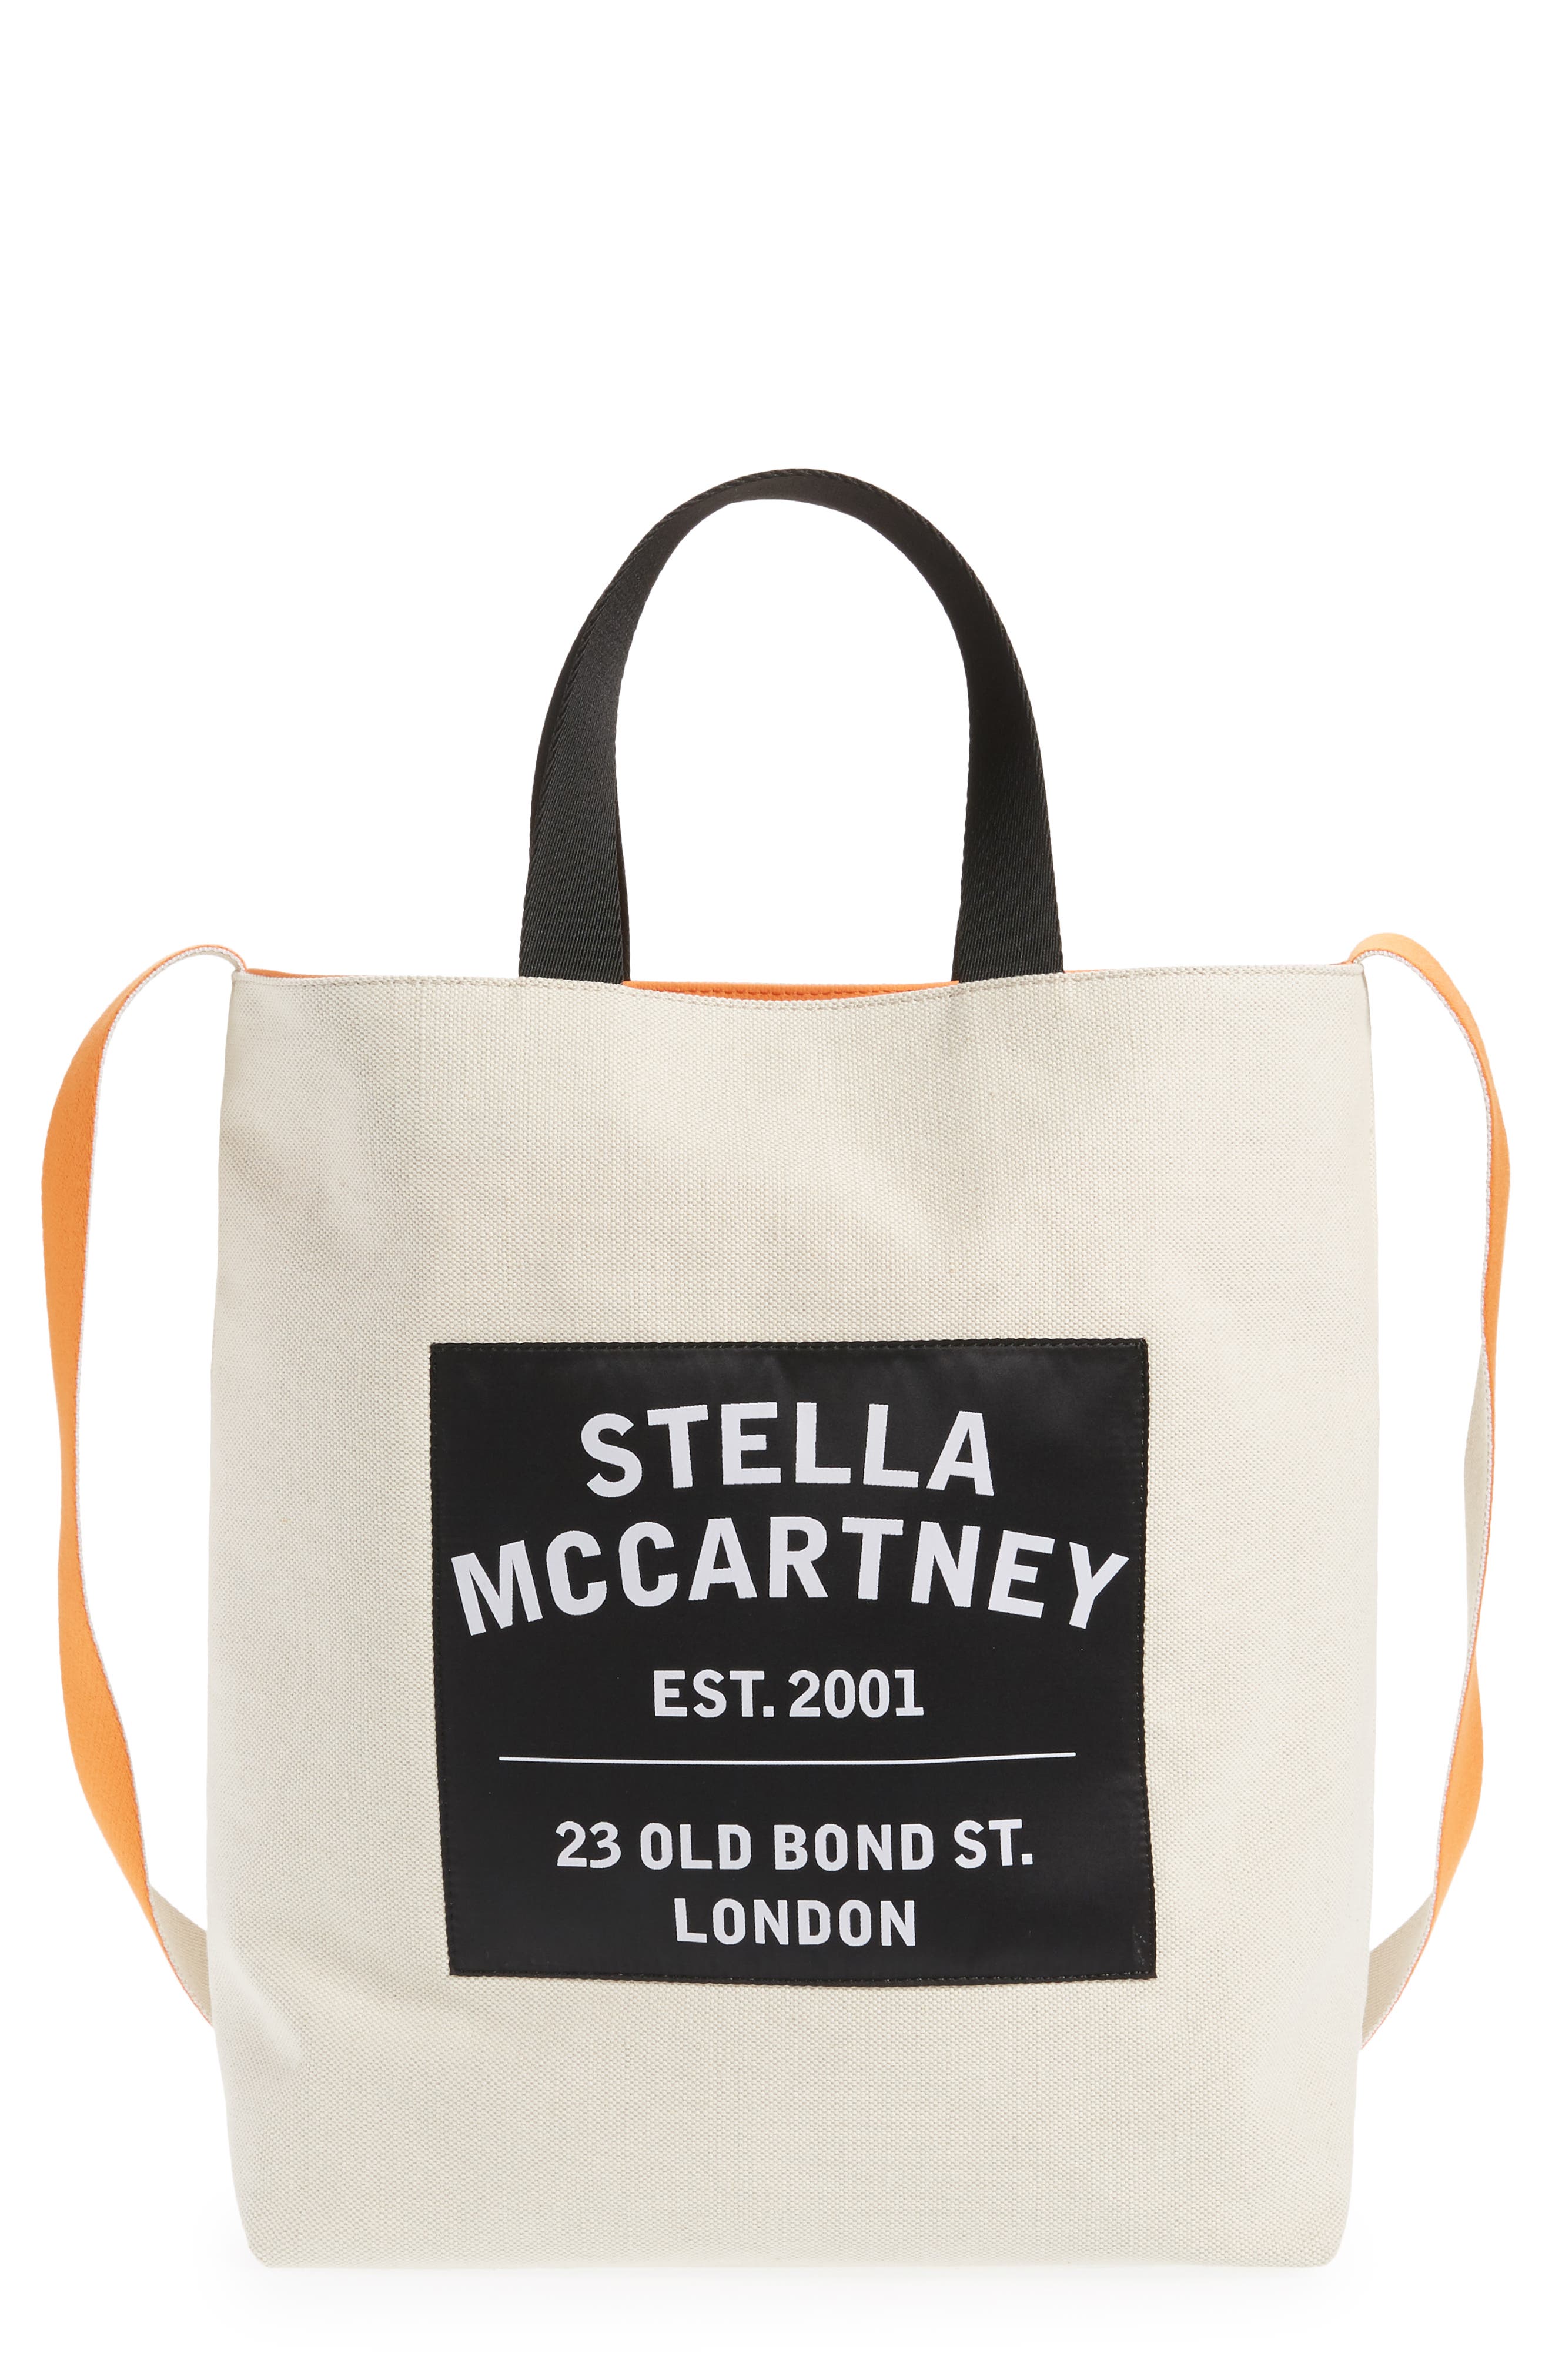 stella mccartney clear bag